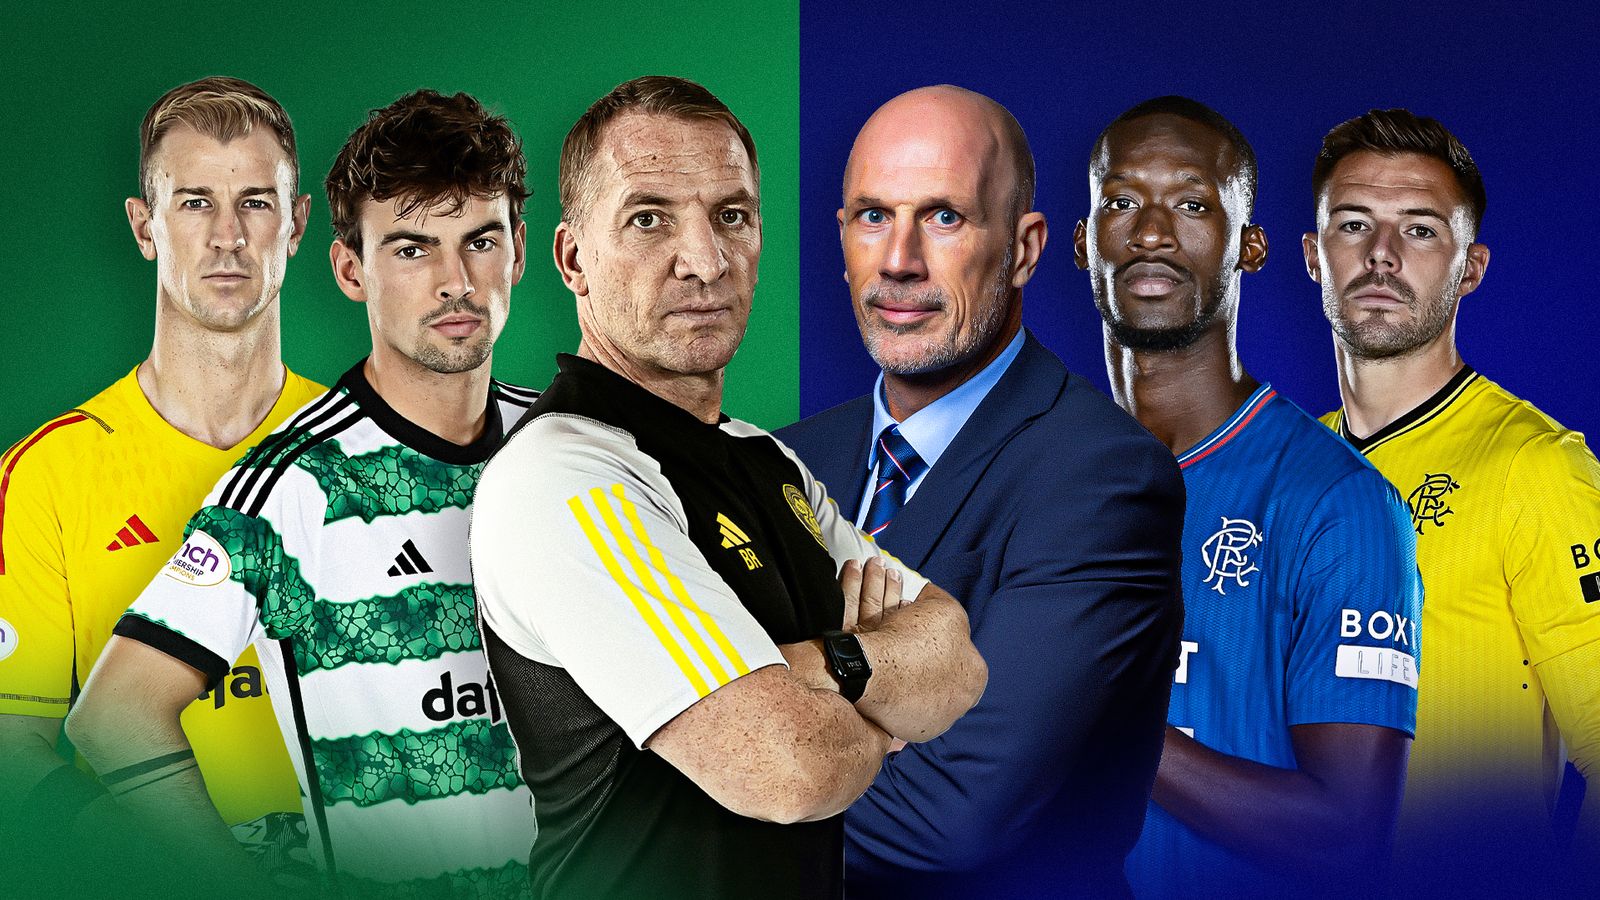 การแข่งขันชิงตำแหน่งพรีเมียร์ชิพของสกอตแลนด์: Celtic หรือ Rangers ในที่นั่งคนขับ?  |  ข่าวฟุตบอล